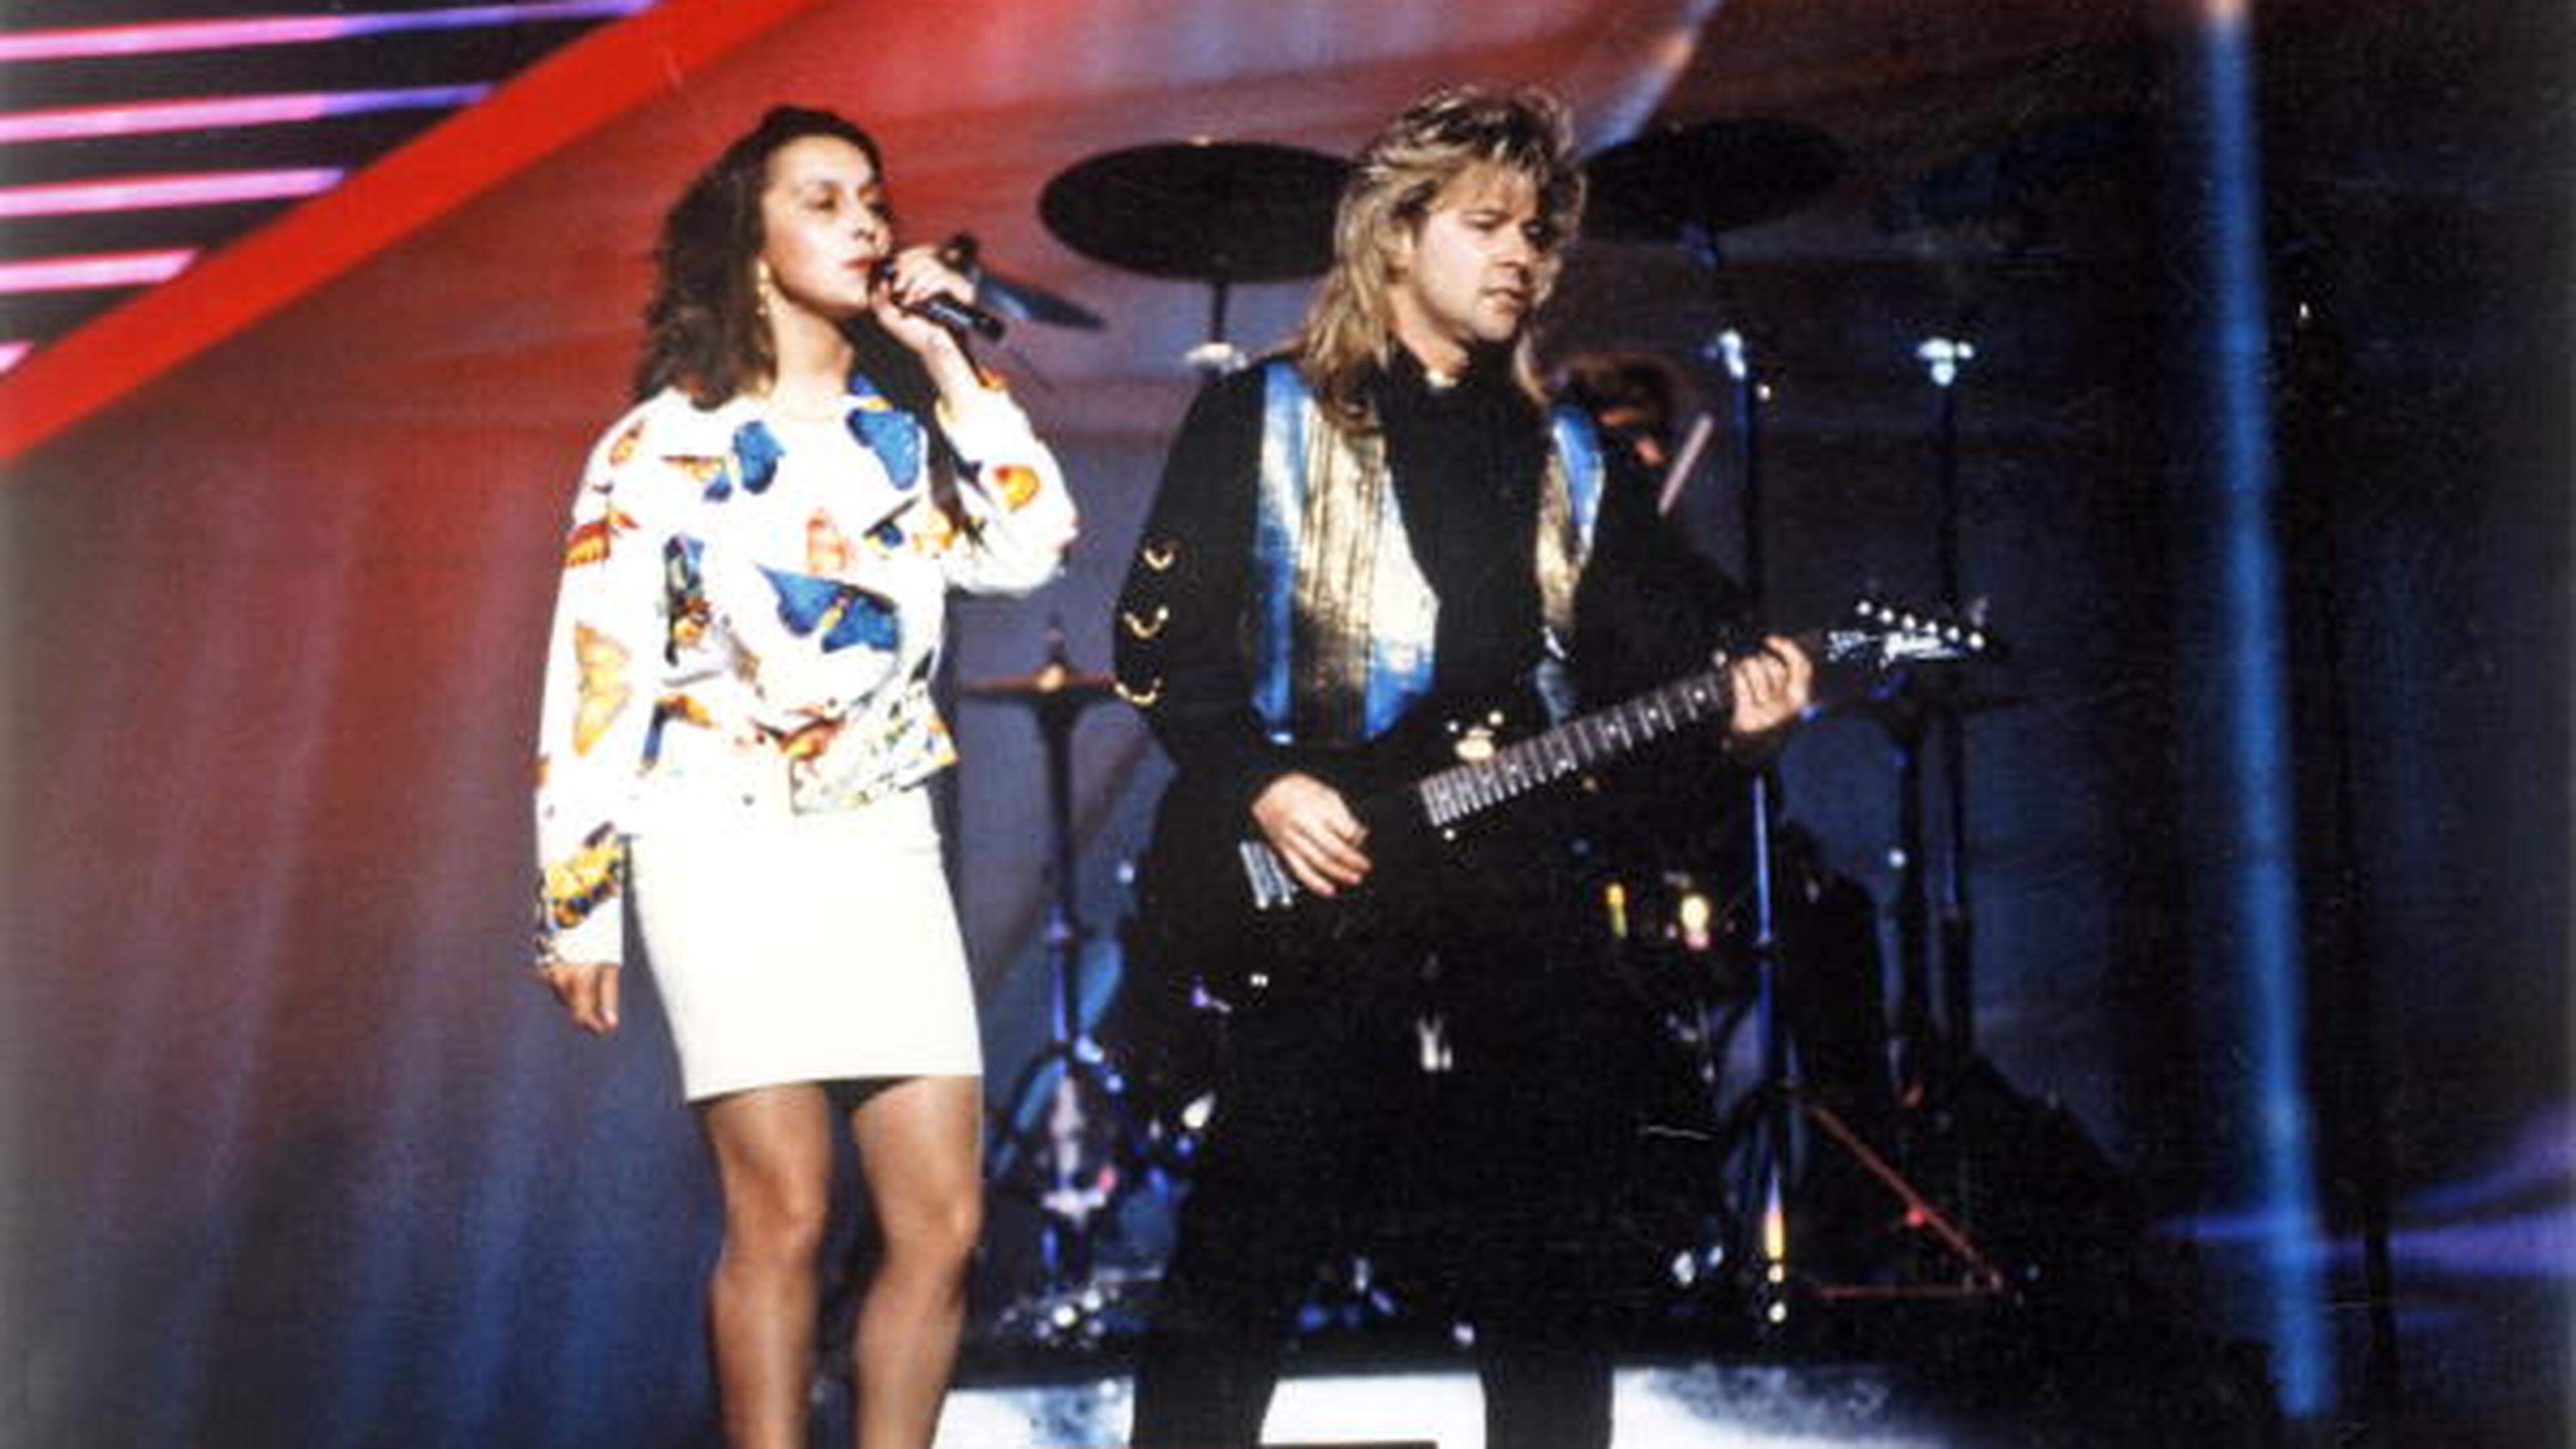 Das Duo Modern Times, bestehend aus Simone Weis und Jimmy Martin, belegte beim ESC 1993 im irischen Millstreet mit dem Lied „Donne-moi une chance“ Platz 20 unter 25 Teilnehmern.